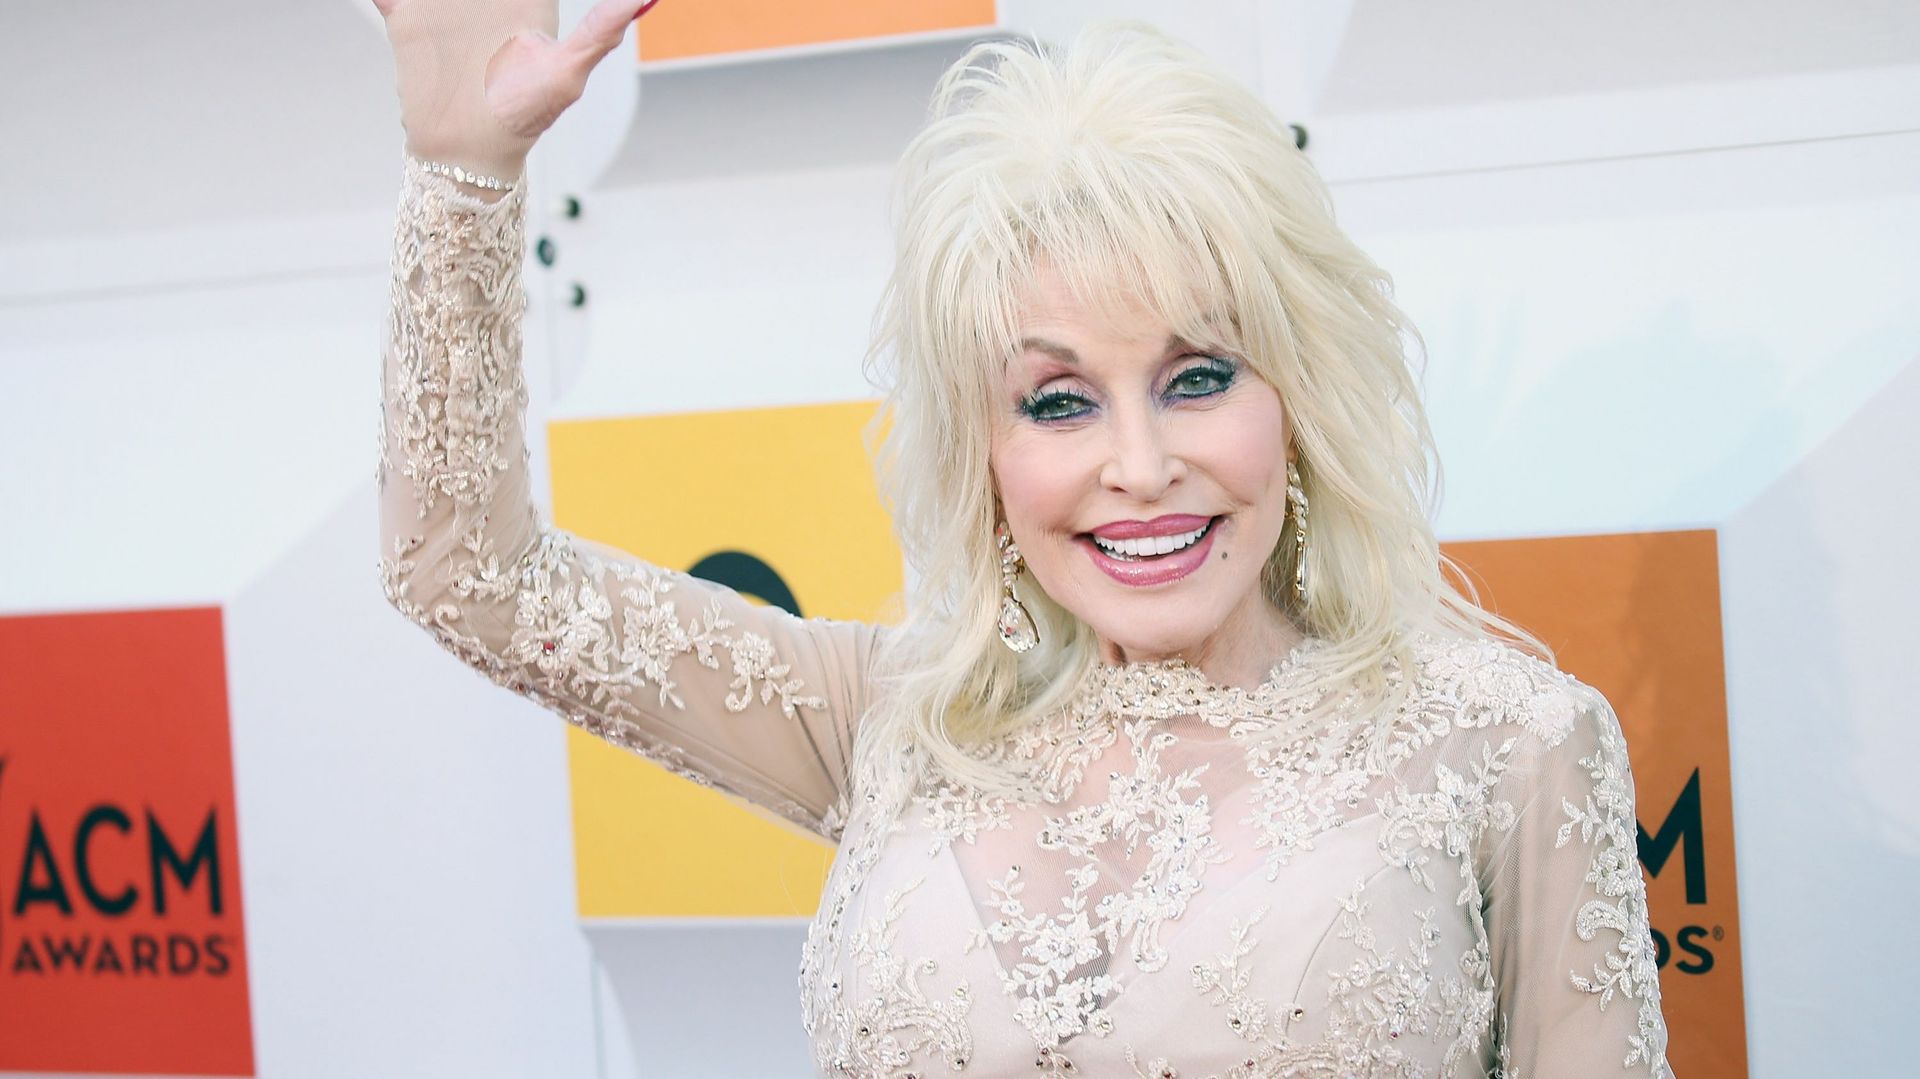 Dolly Parton arrive à la 51e cérémonie des Academy of Country Music Awards qui se tient au MGM Grand Garden Arena le 3 avril 2016 à Las Vegas, dans le Nevada.